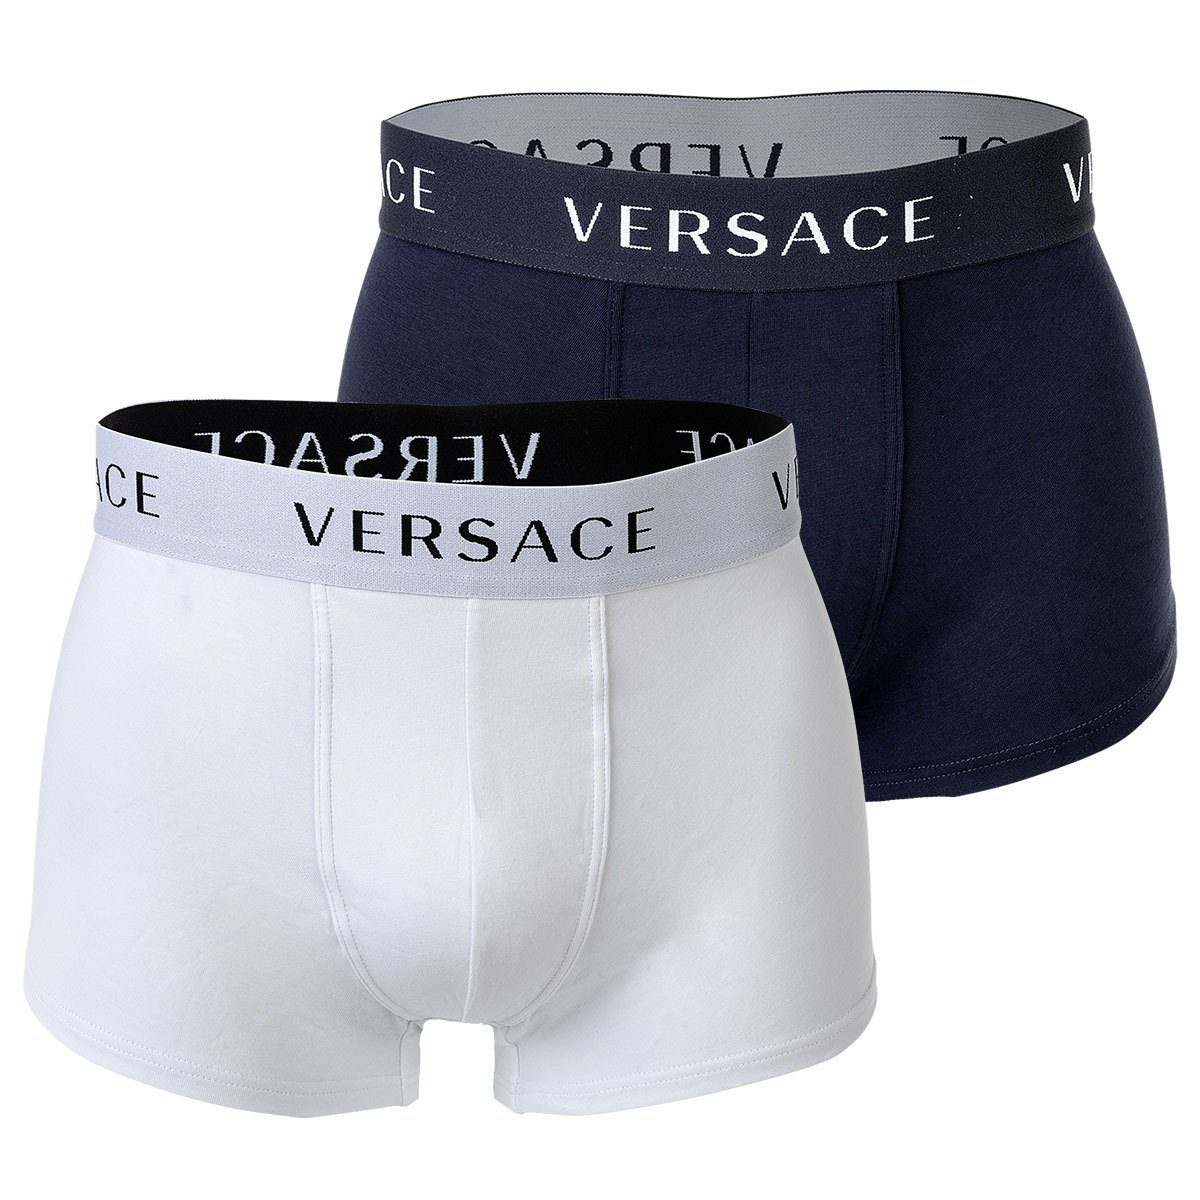 Versace Boxer »Herren Boxer Shorts, 2er Pack - Trunk,« online kaufen | OTTO